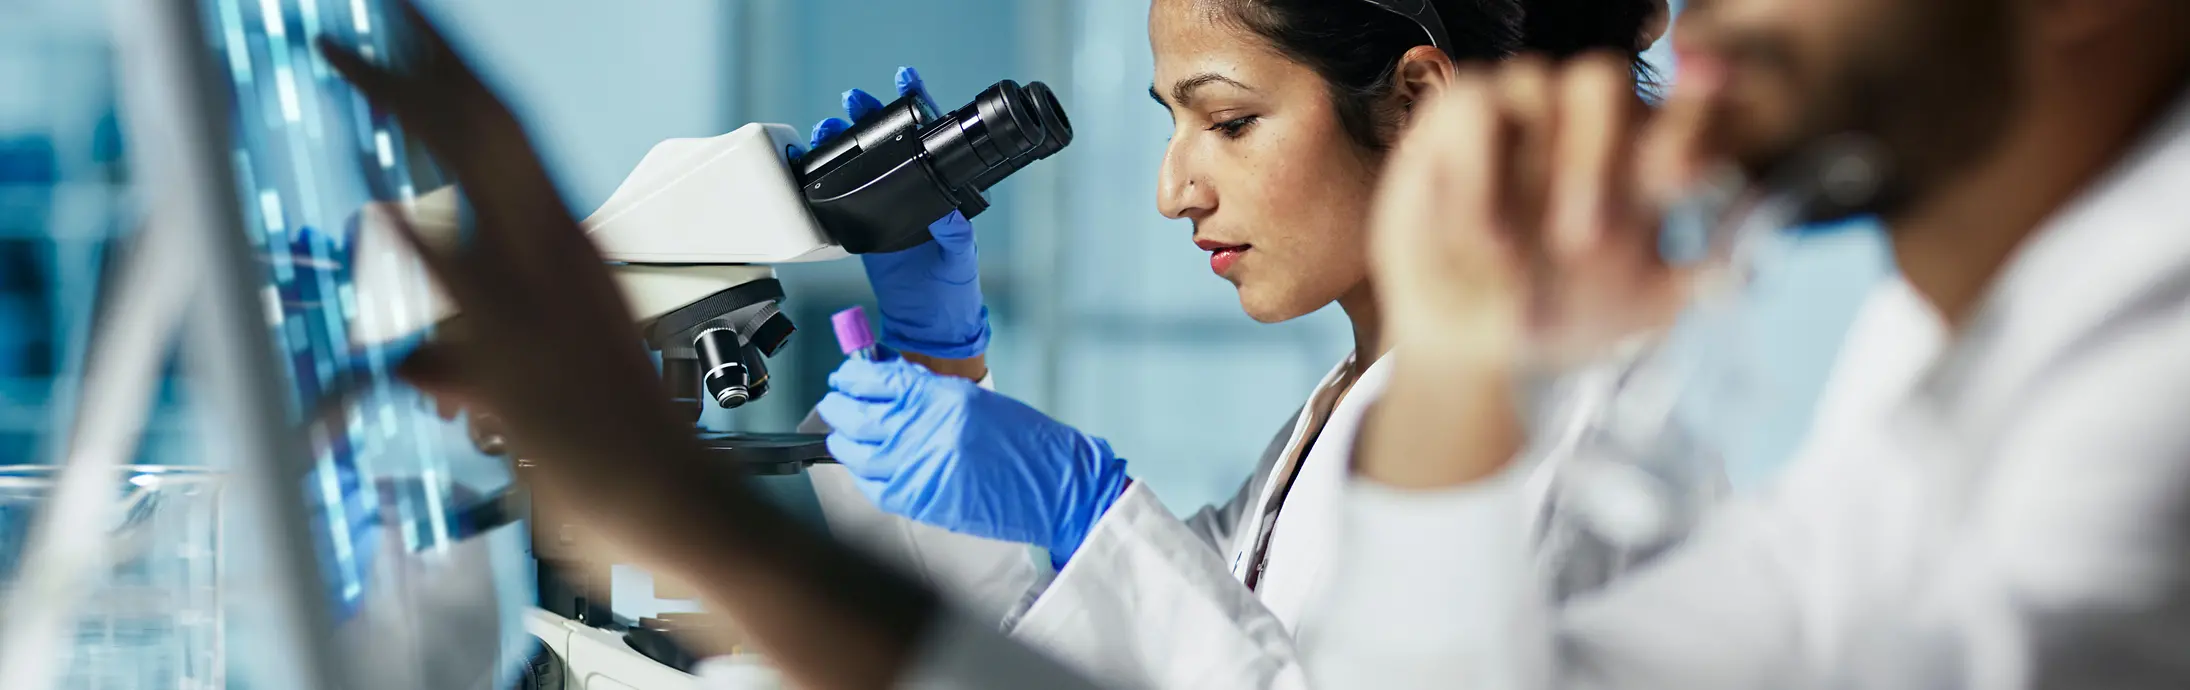 laboratoř s ženou sedící před mikroskopem, která si prohlíží vzorek, a vpředu muž s plnovousem, který se dívá na obrazovku.